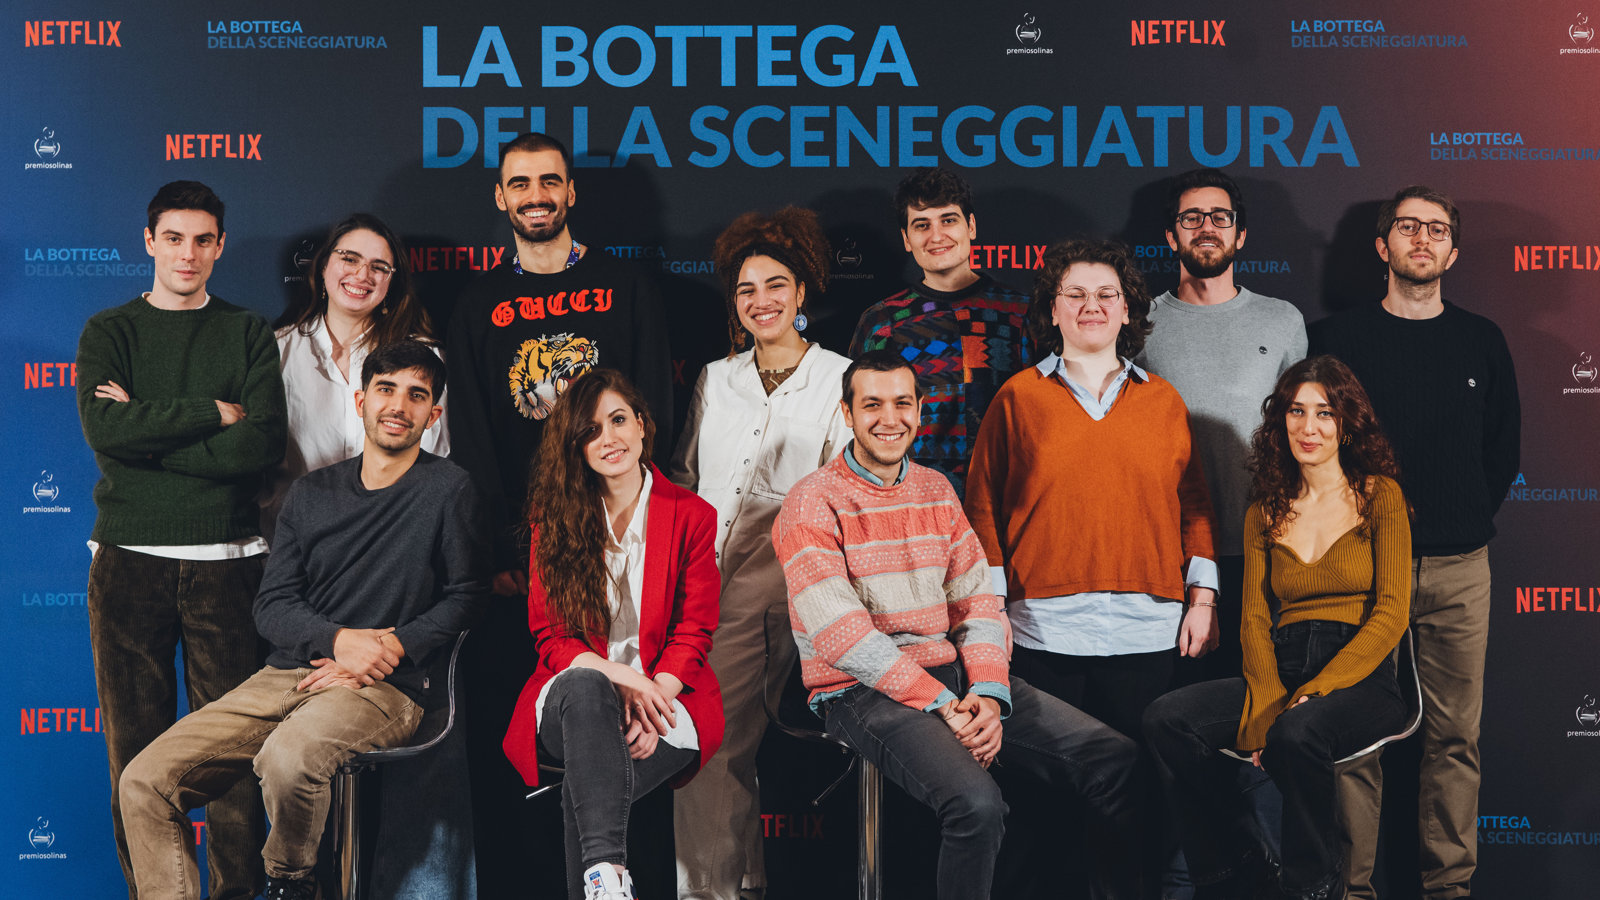 Le migliori storie seriali che vedremo, secondo Netflix e il Premio Solinas